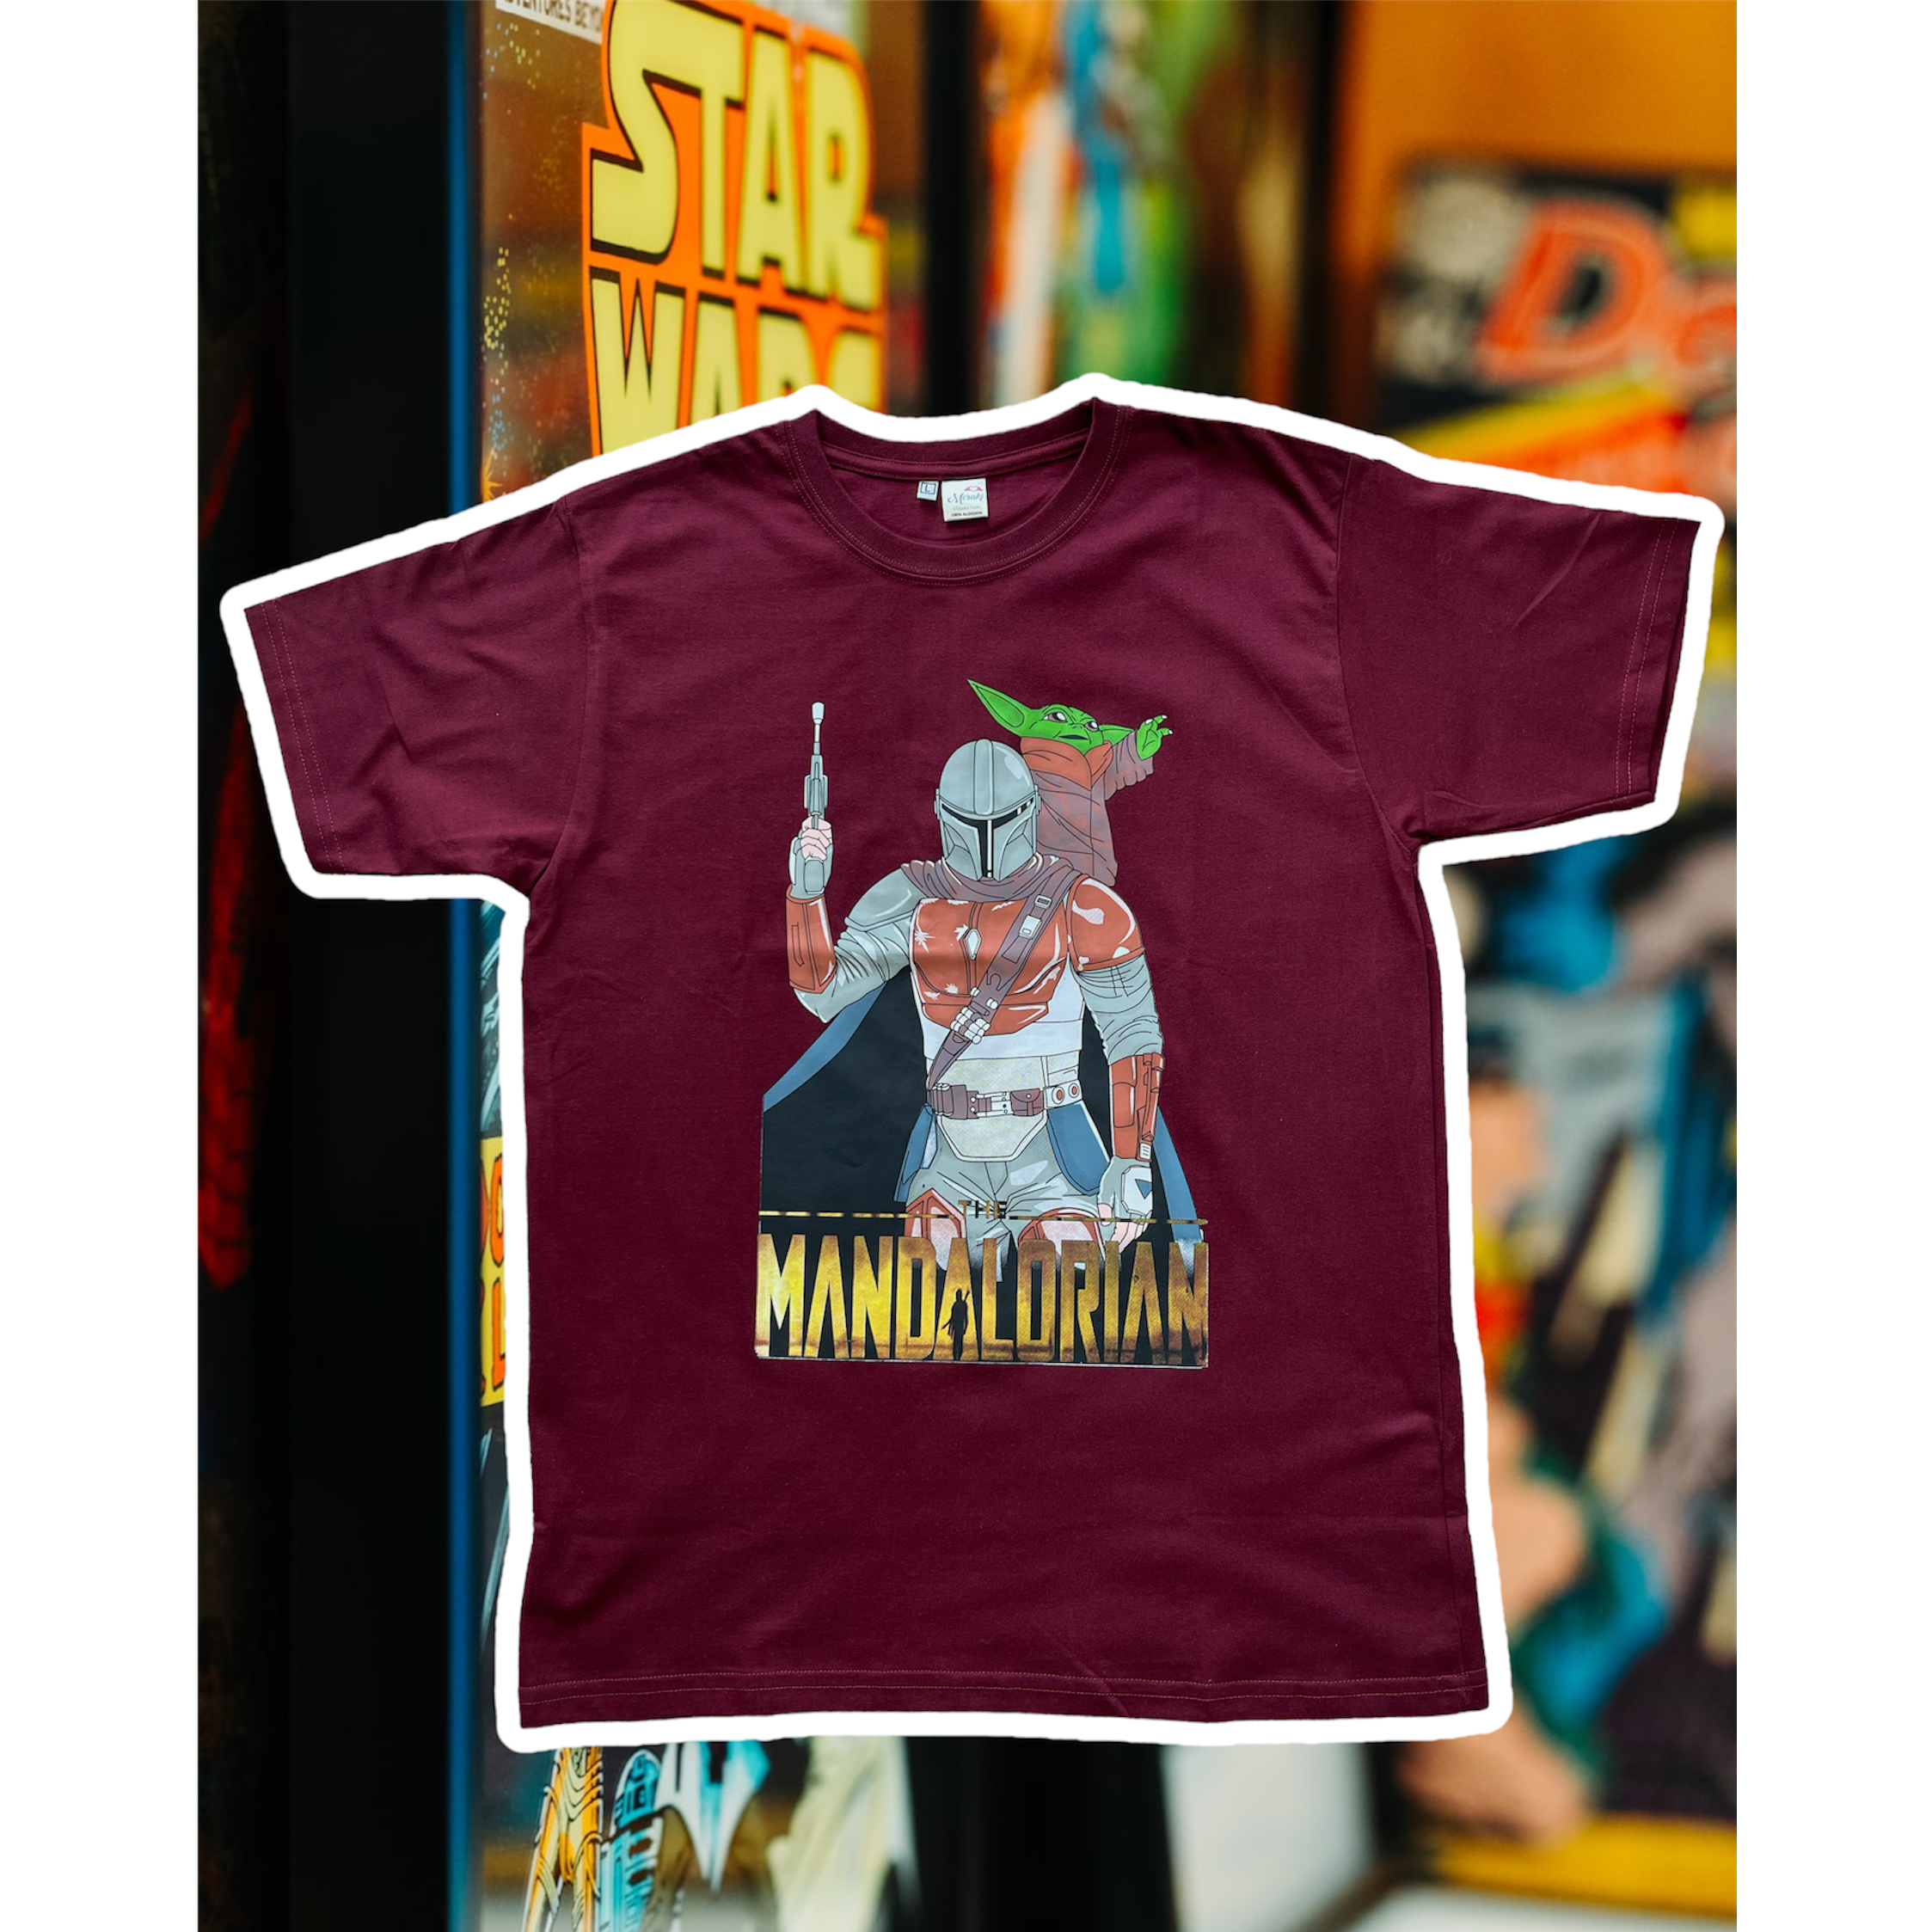 T-shirt modelo Star Wars Mandalorian talla L